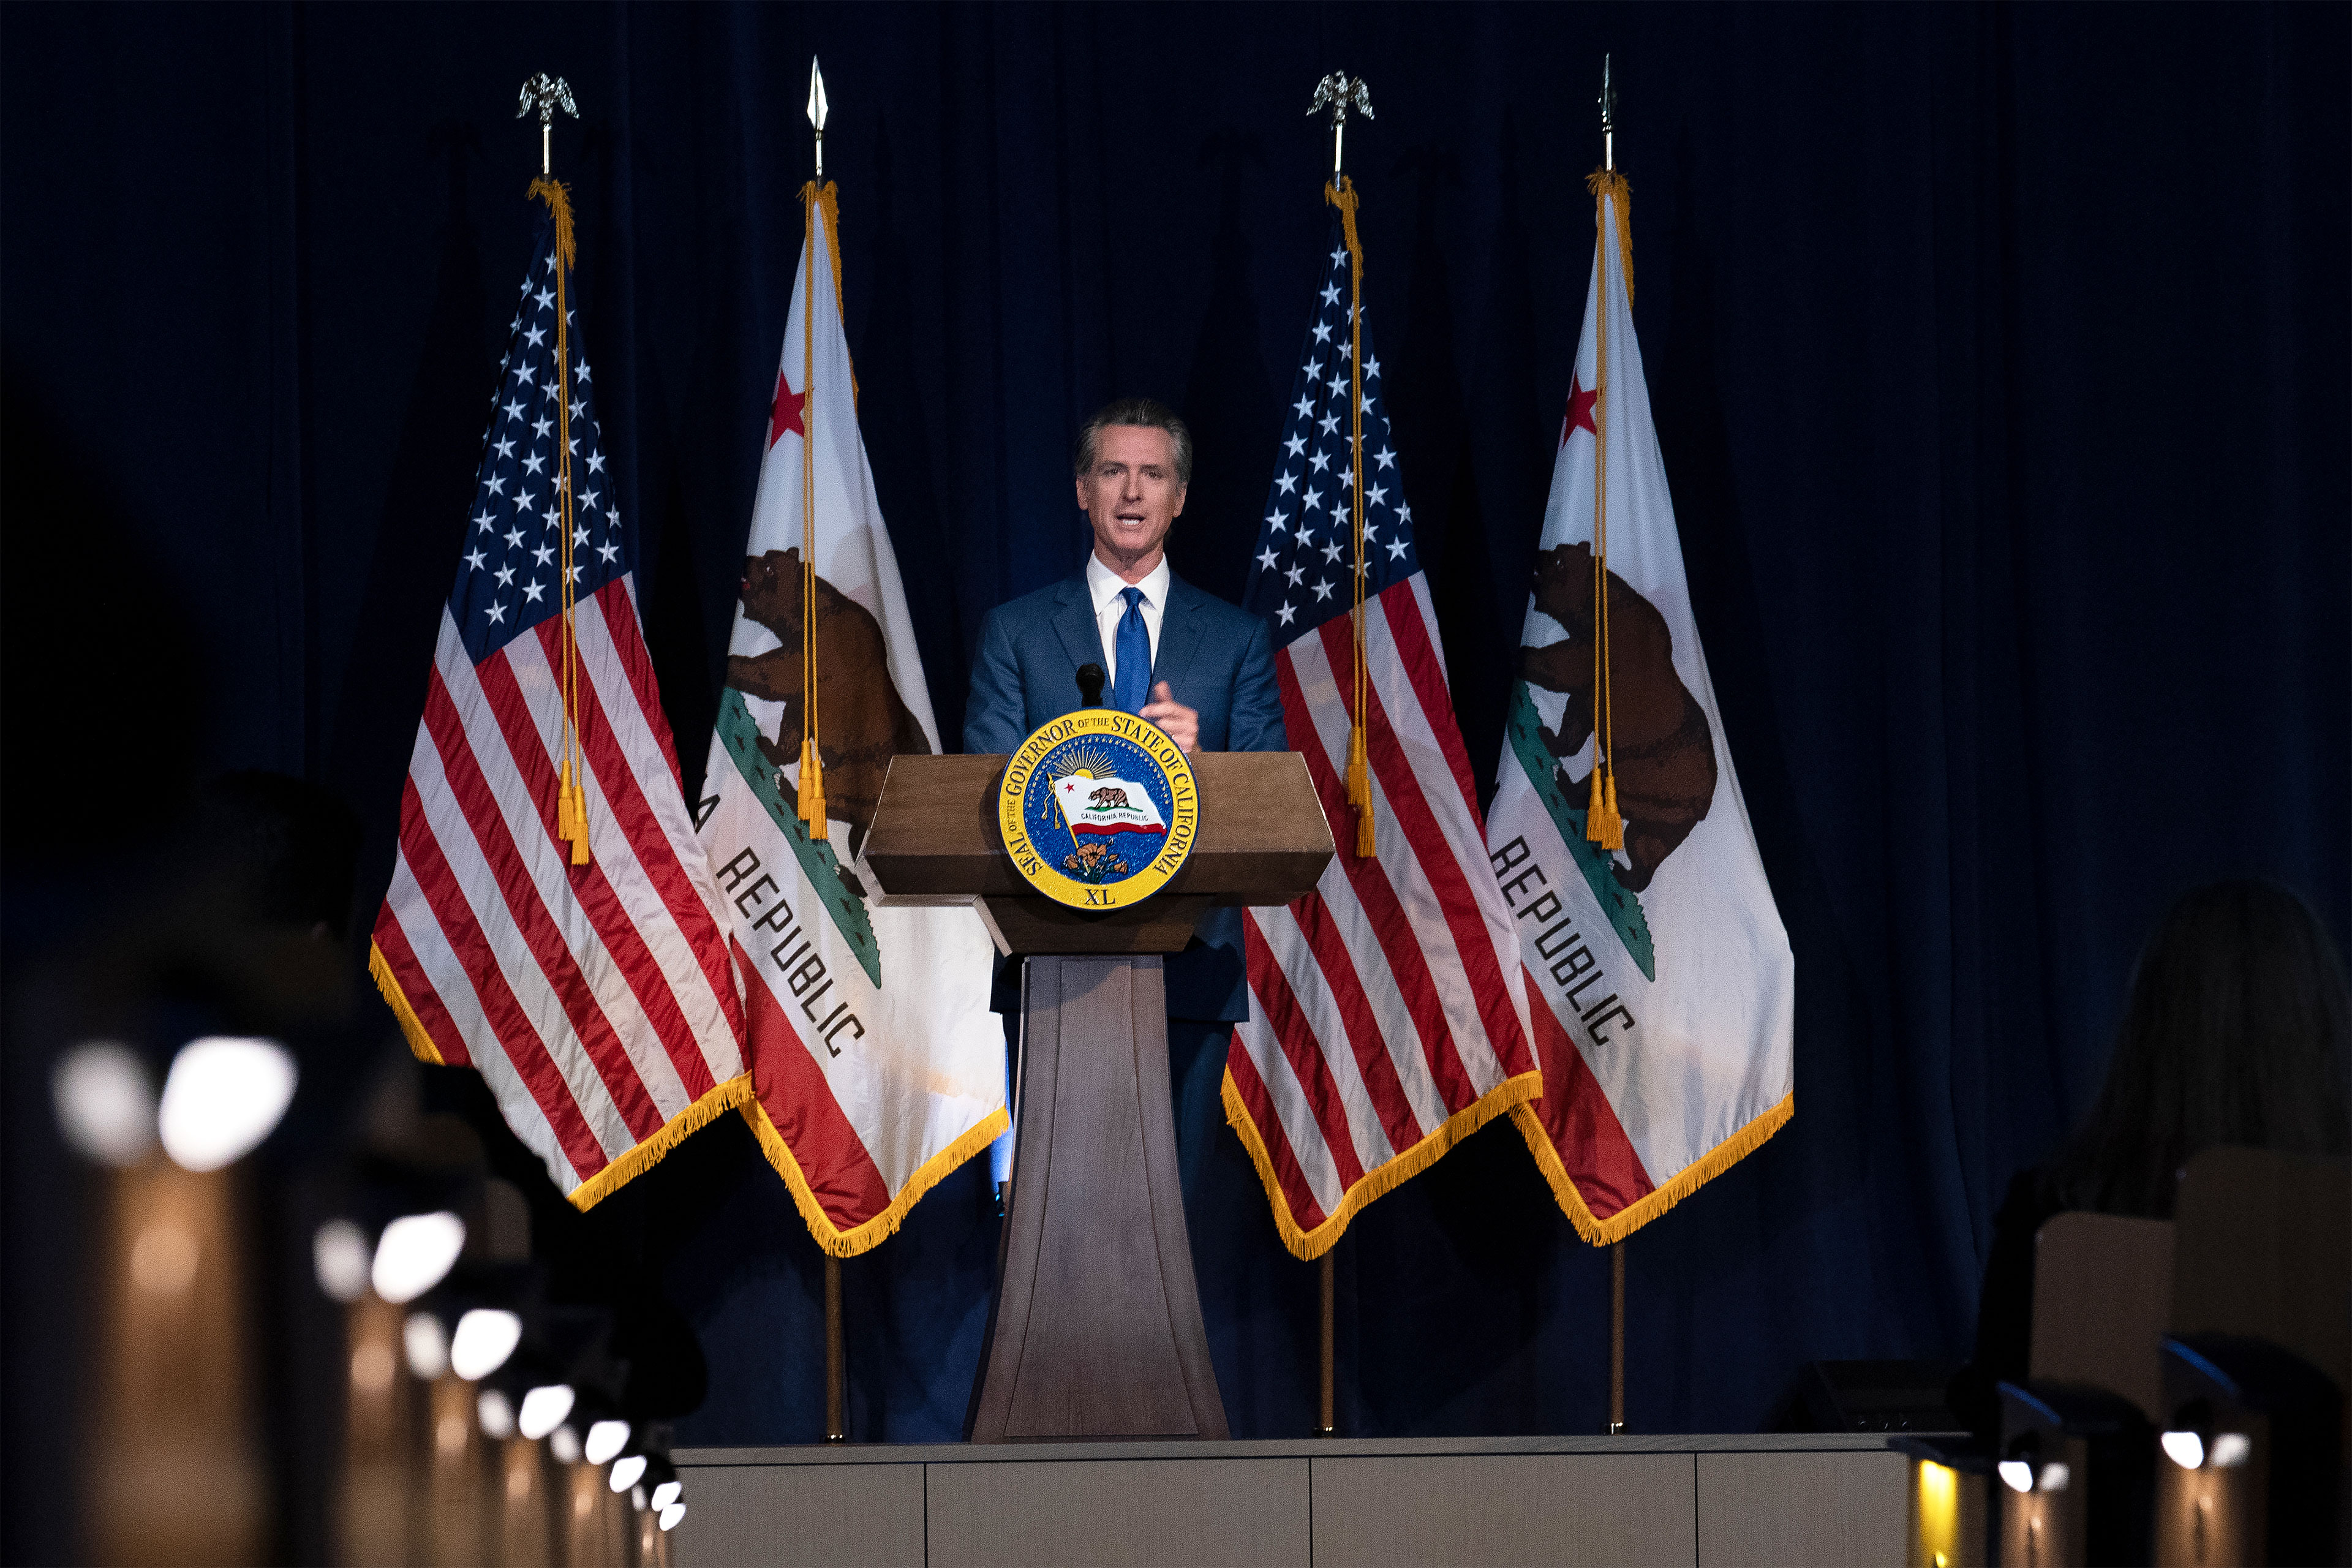 Gavino Newsomo nuotrauka, pristatanti savo peržiūrėtą biudžetą už podiumo ir apsupta Amerikos bei Kalifornijos vėliavų.